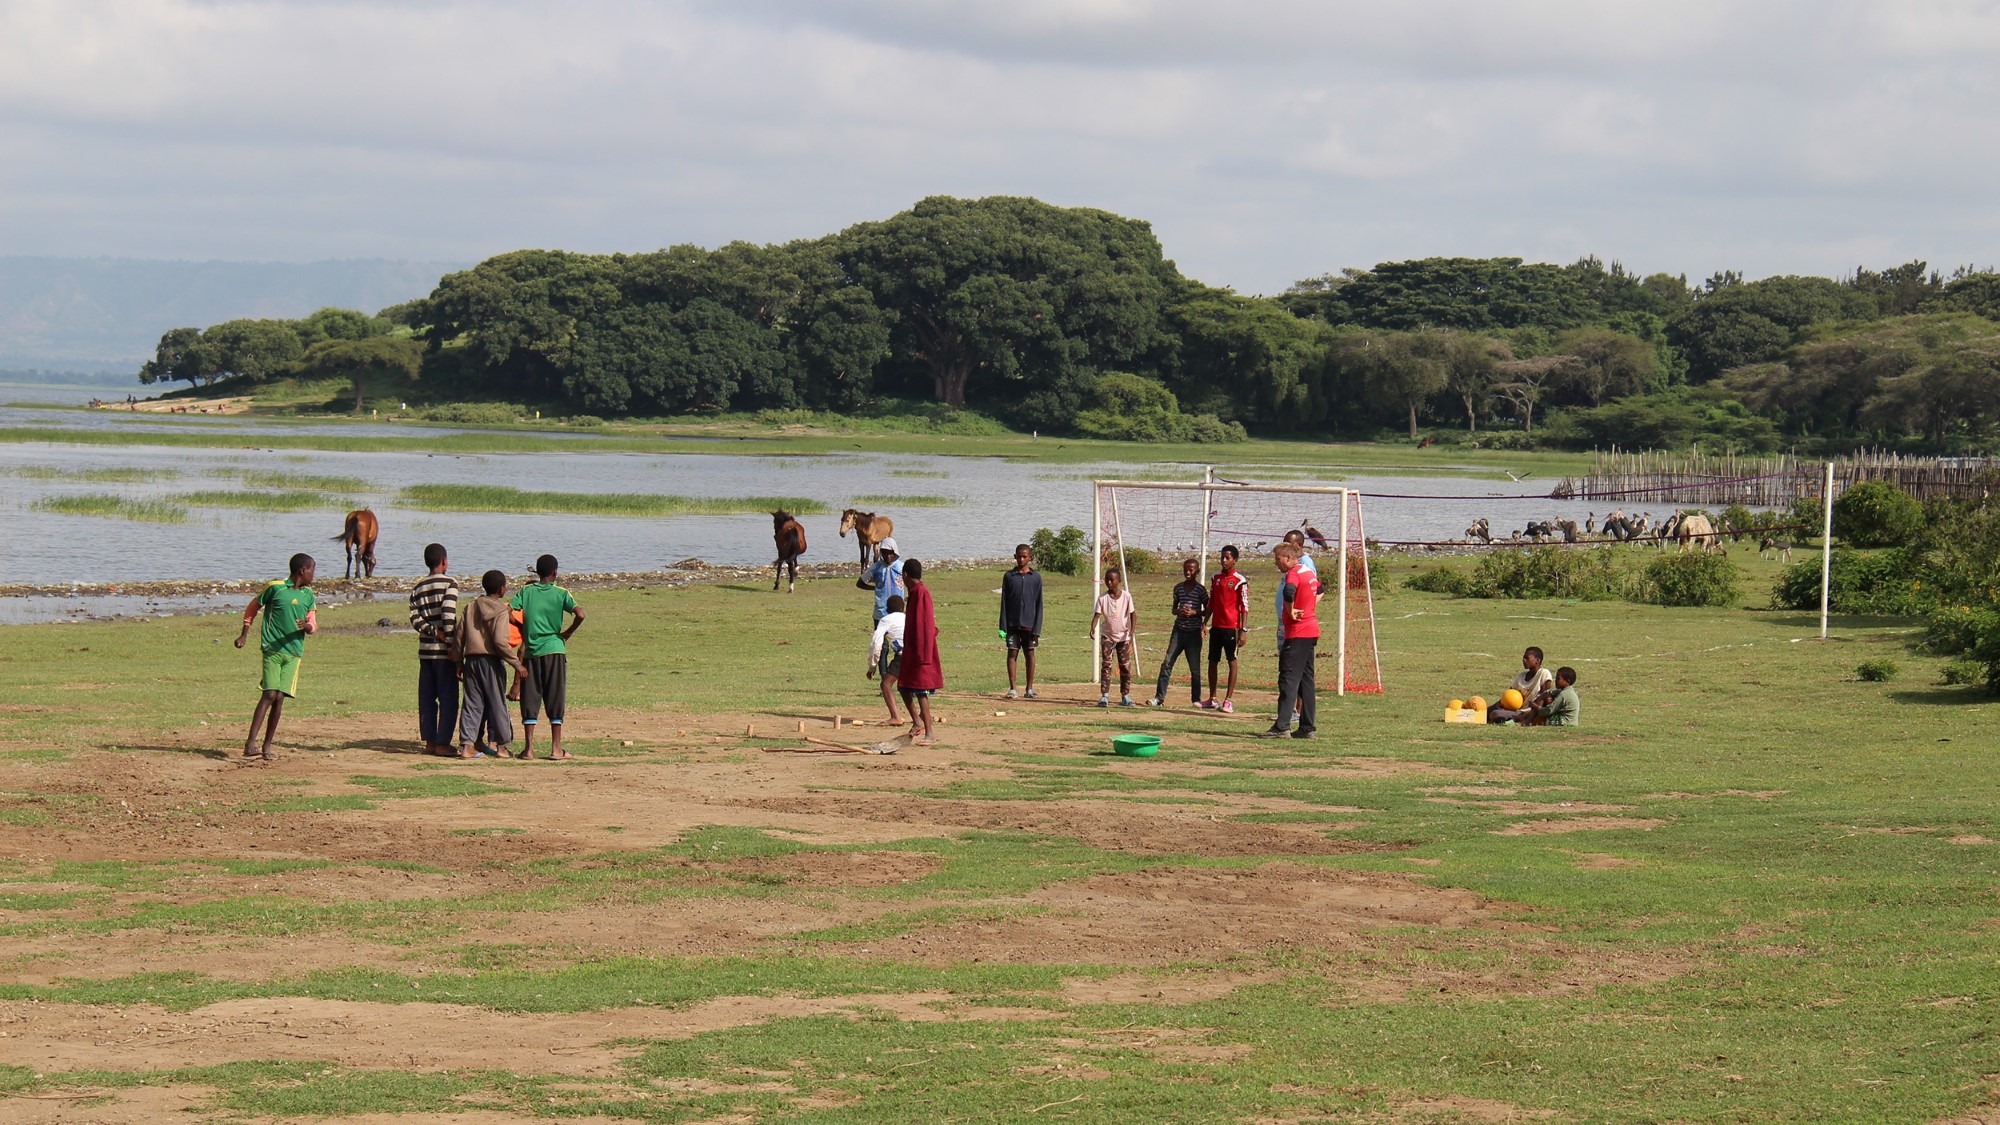 Idrett på gressbane i afrikansk landskap